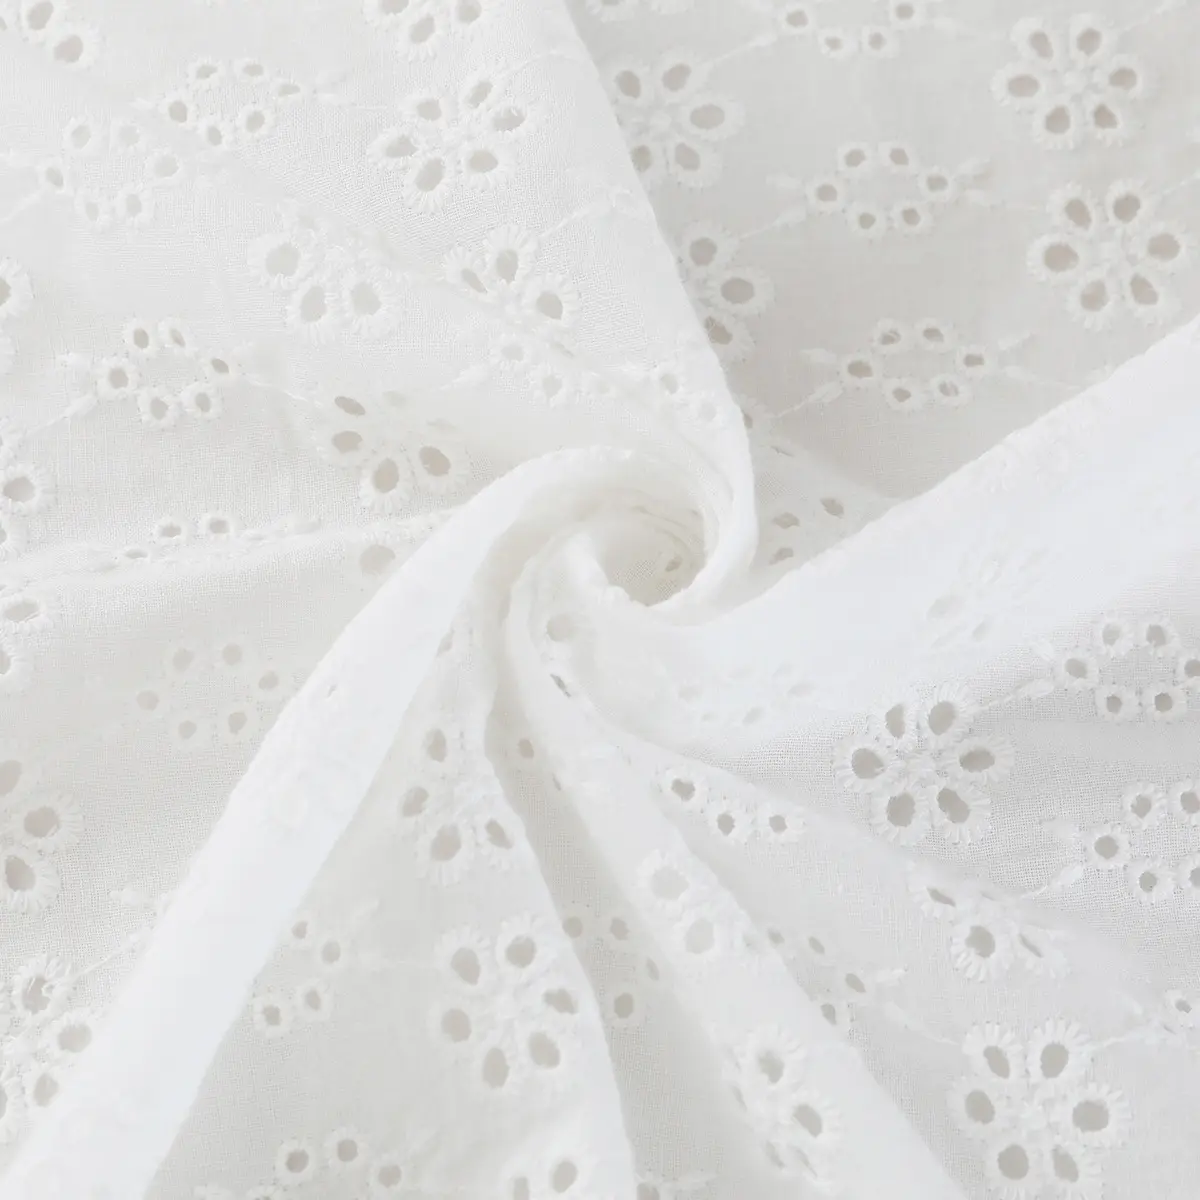 Design flores floral padrão personalizado vazado renda olheira algodão bordado tecido para vestido